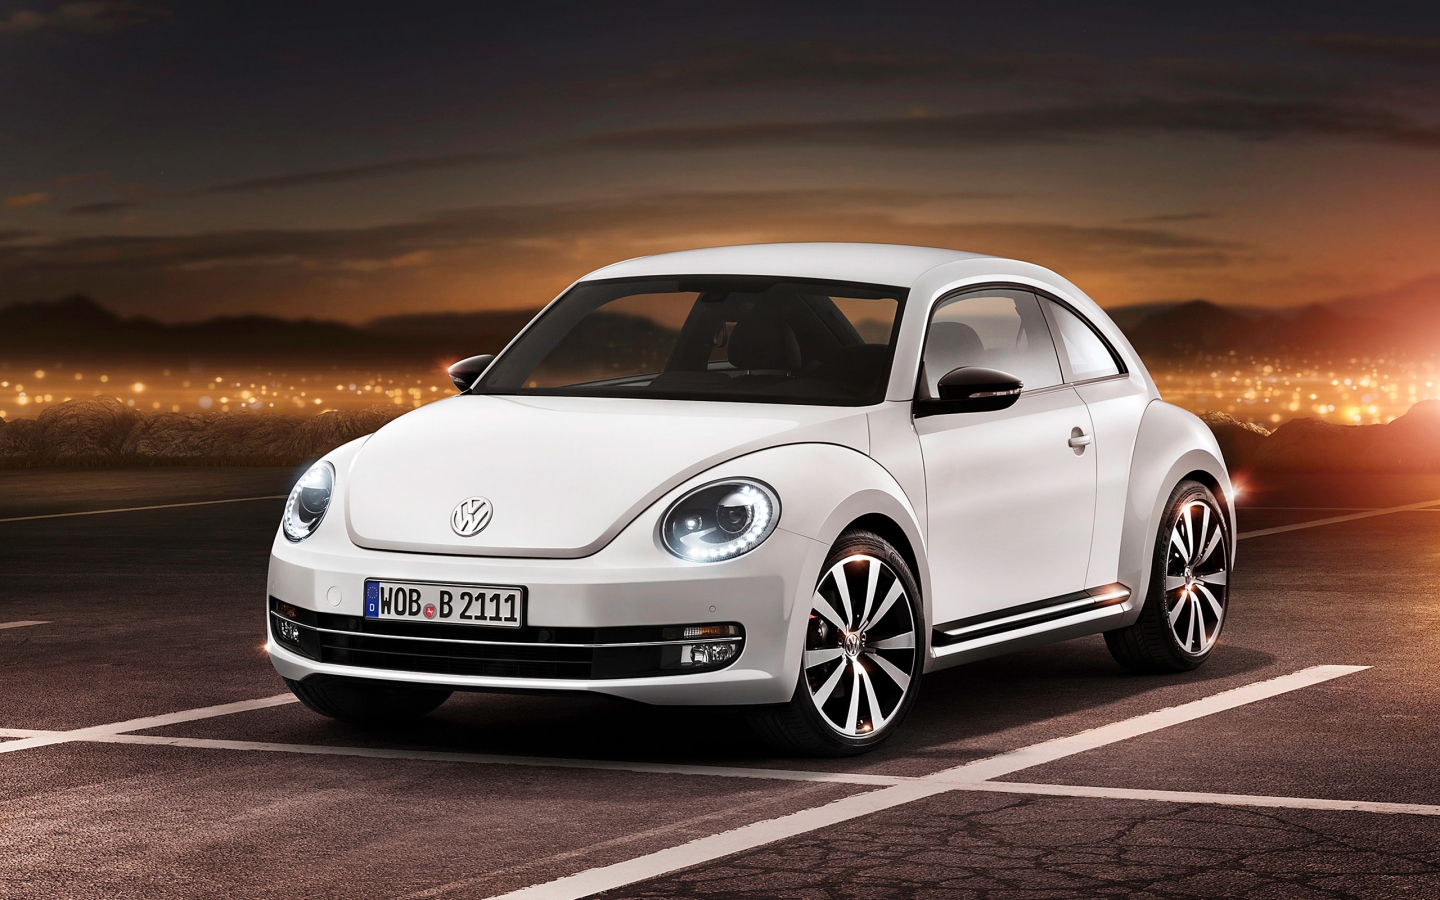 2012 Volkswagen Beetle for 1440 x 900 widescreen resolution